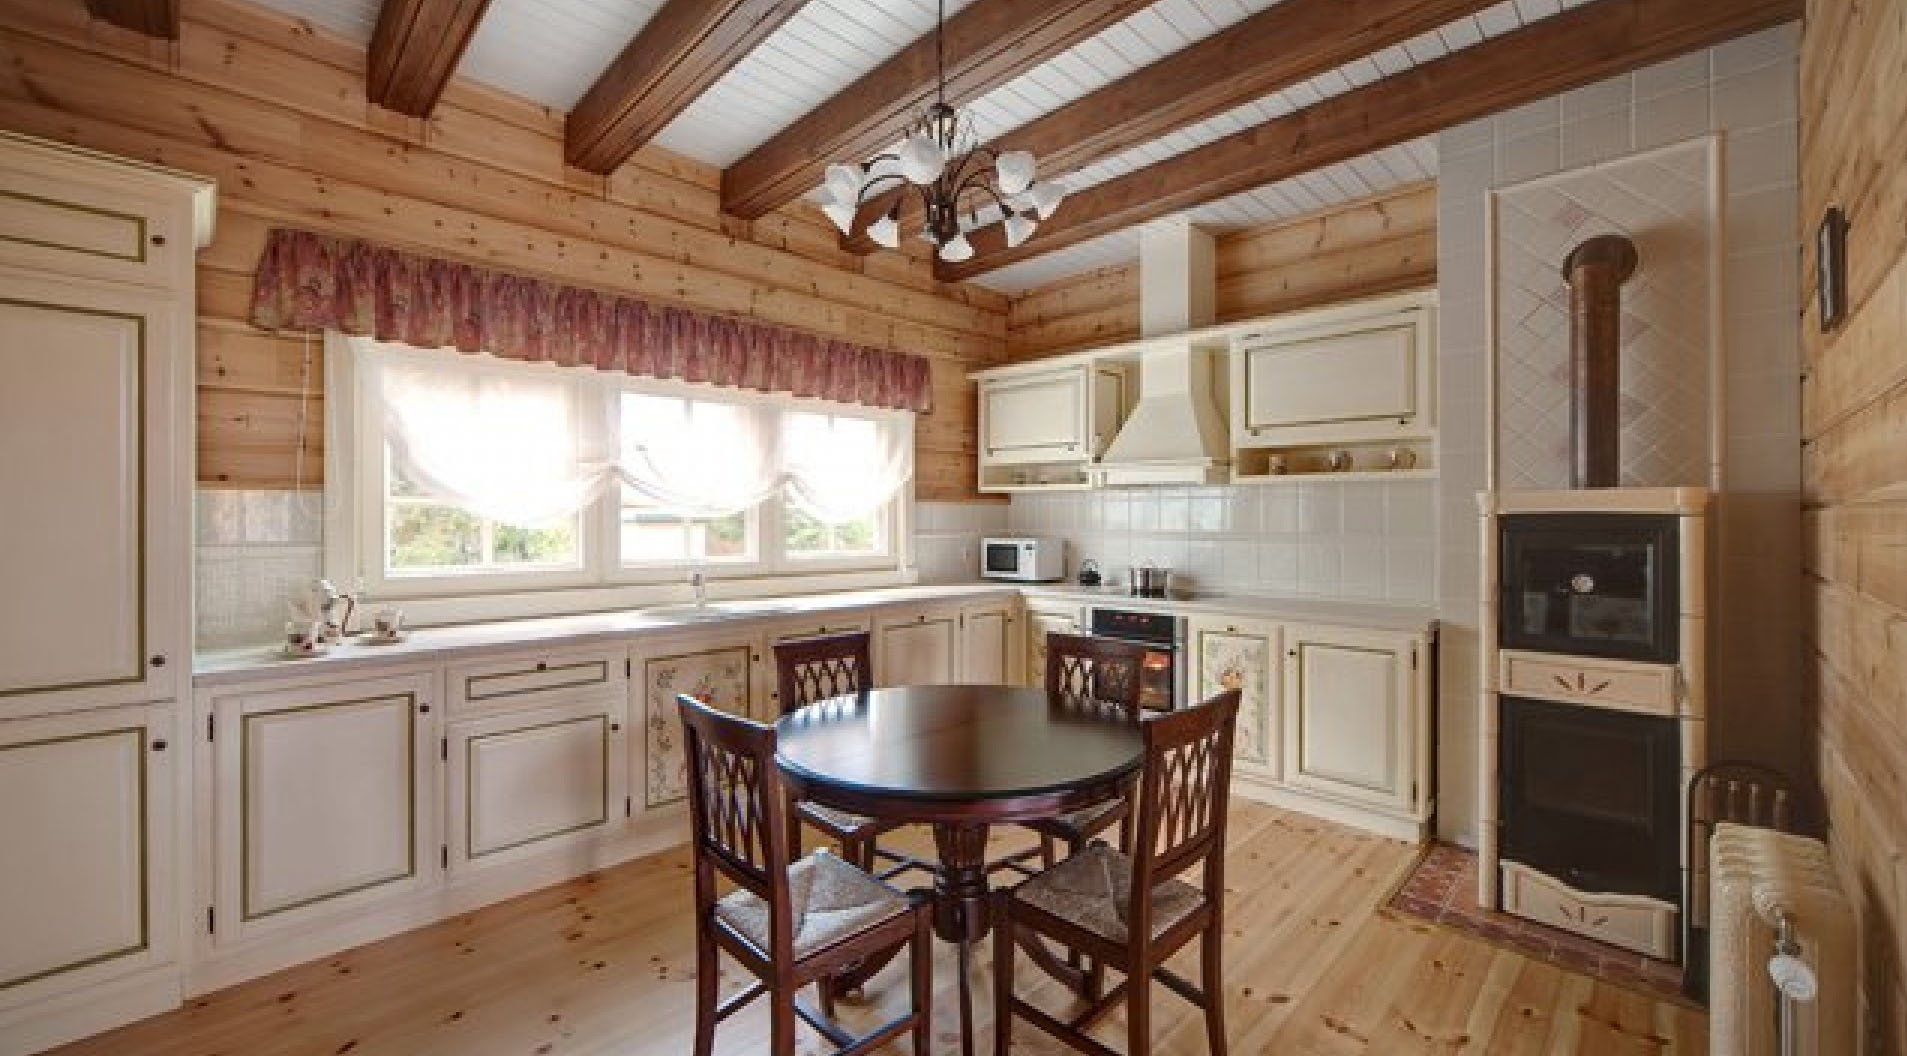 variant van een mooie stijl van keuken in een houten huis